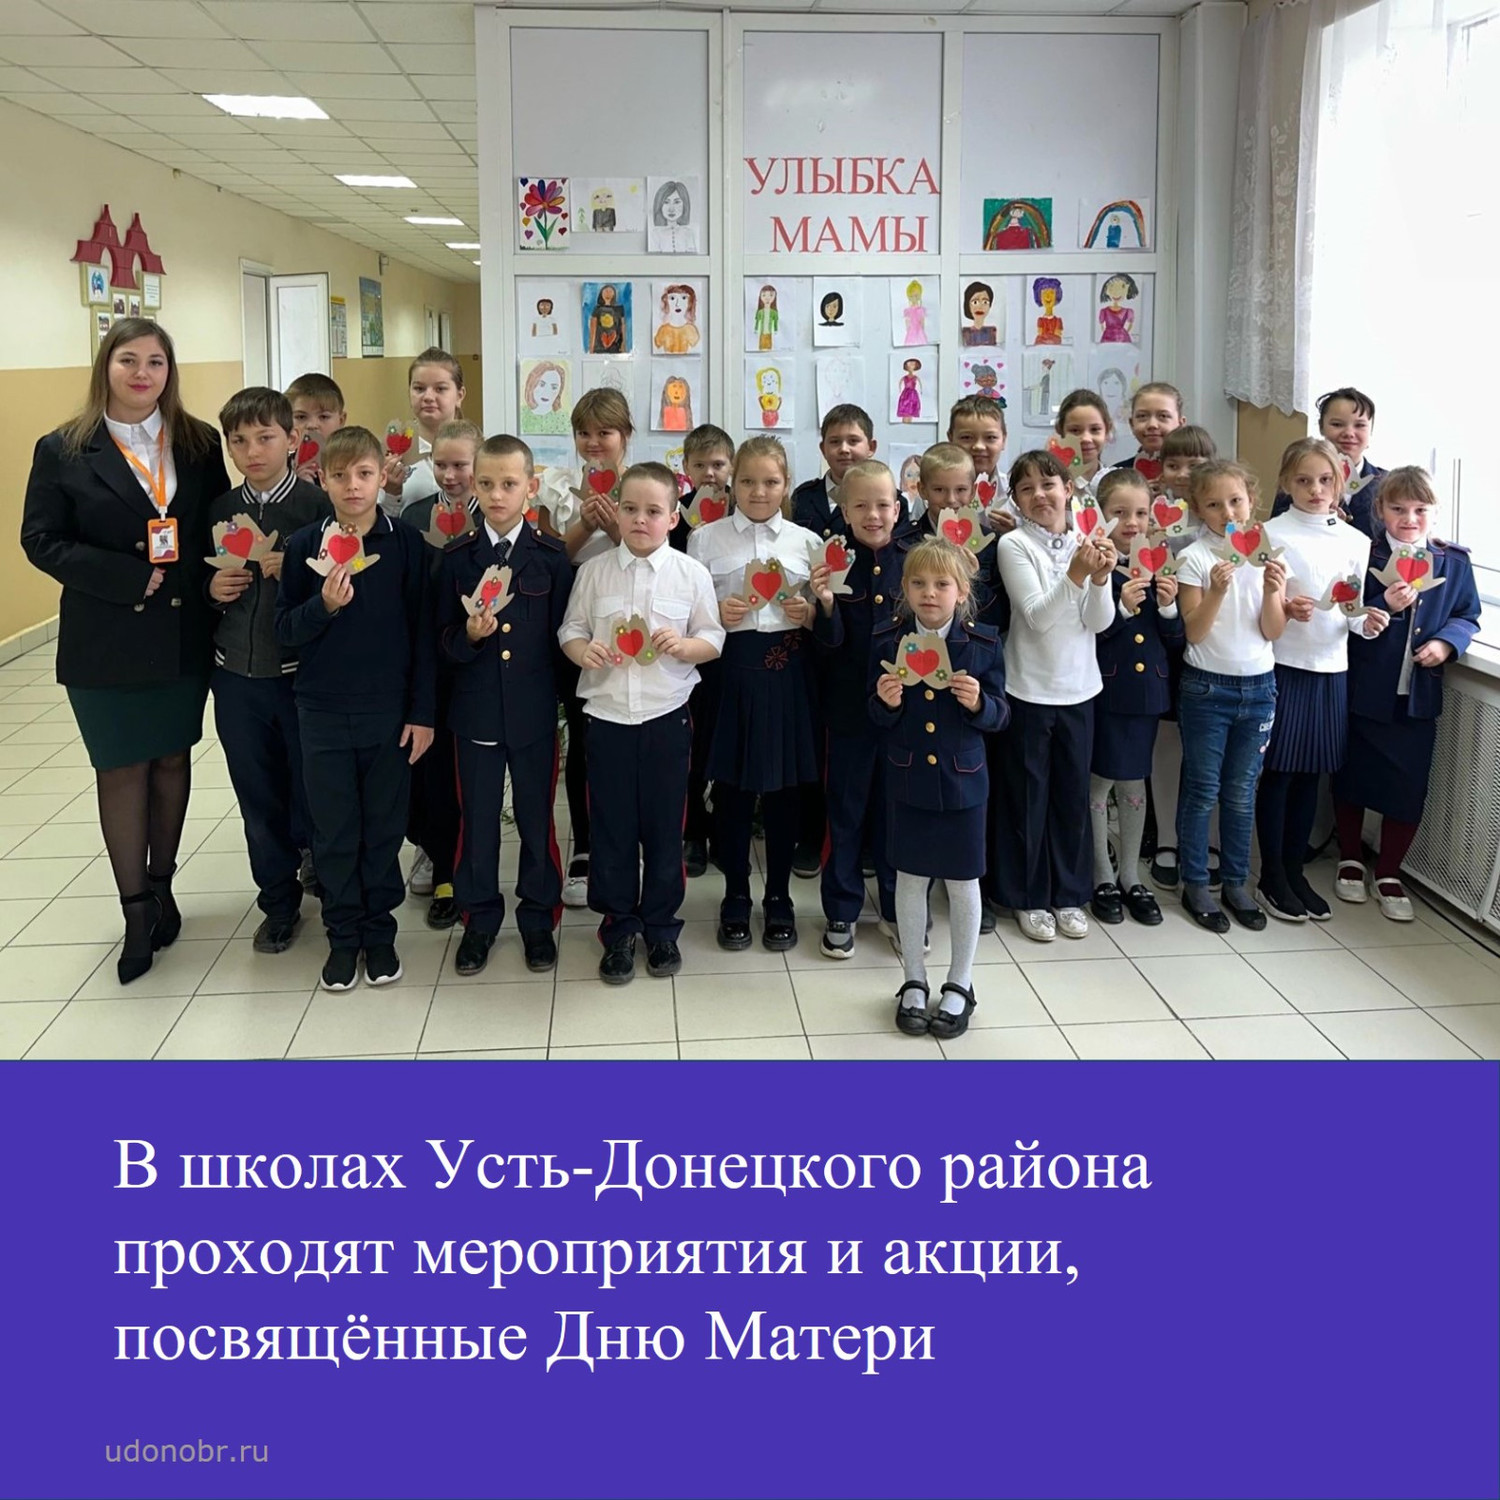 В школах Усть-Донецкого района проходят мероприятия и акции, посвященные Дню Матери